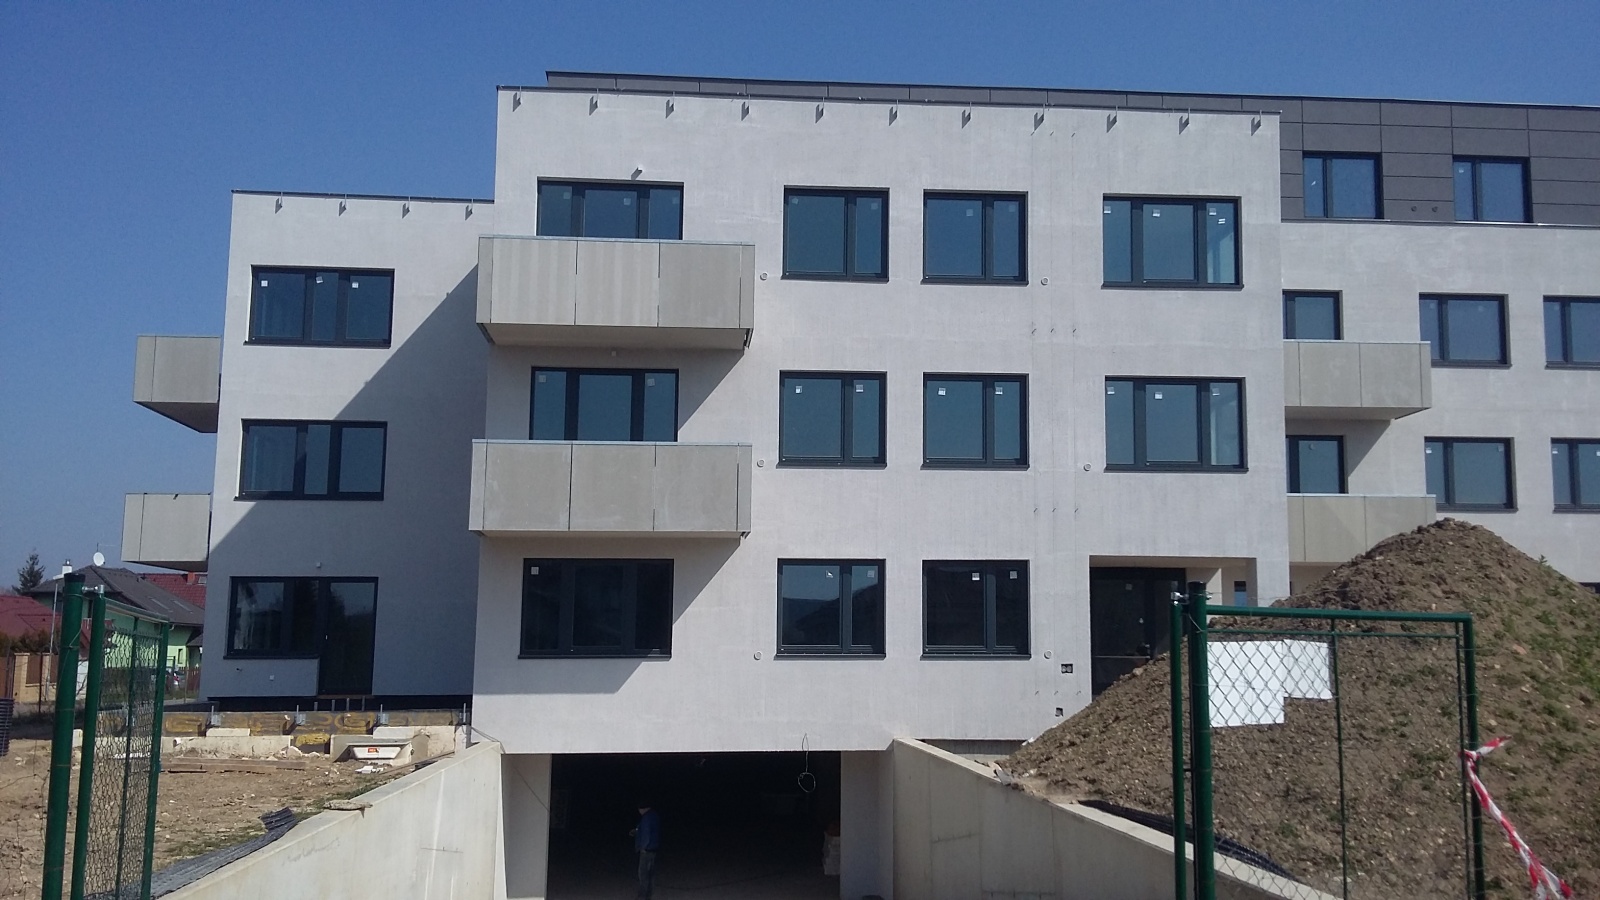 Byt 4+kk, 97.30 m2, Horoměřice, Projekt Višnovka - bytové domy